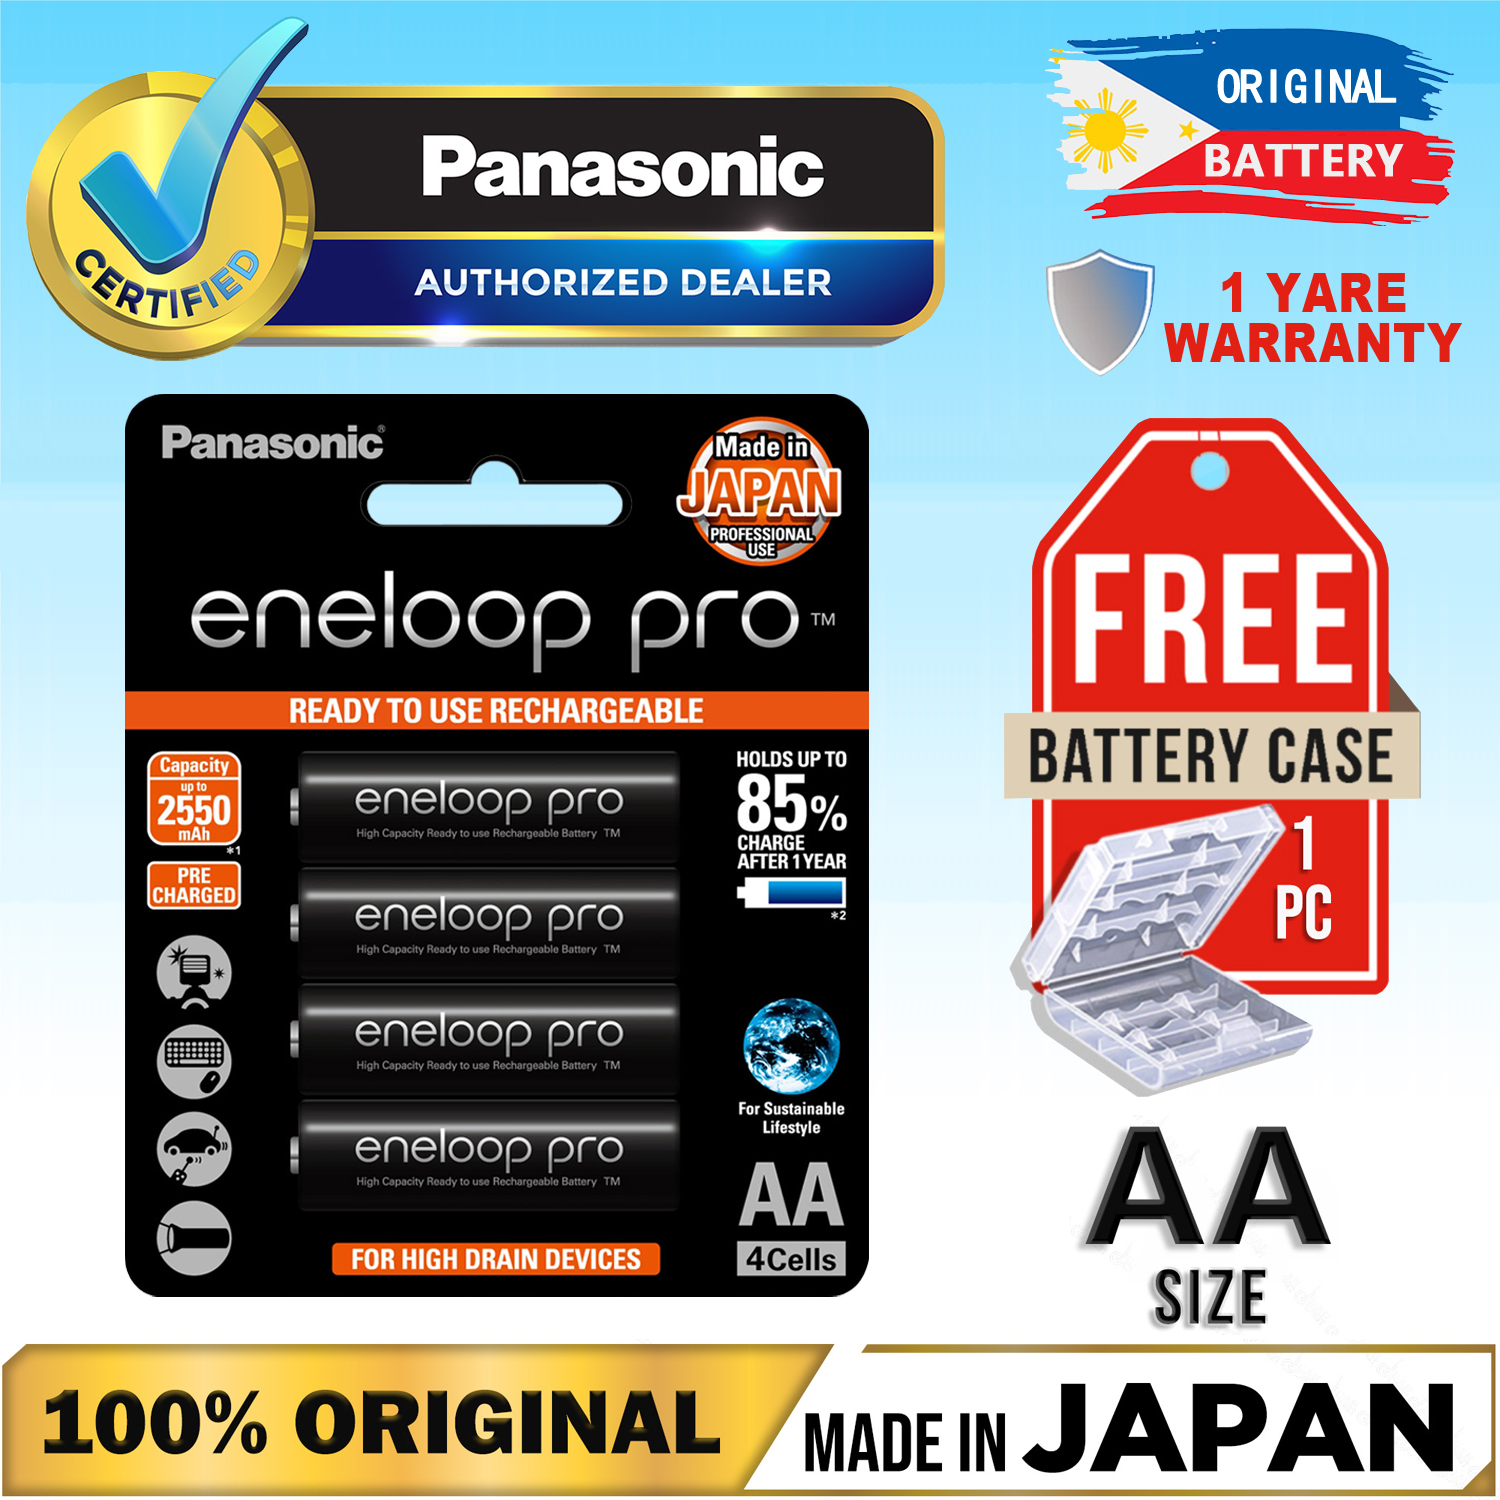 Panasonic eneloop Pro rechargeable AA and AAA battery bundles